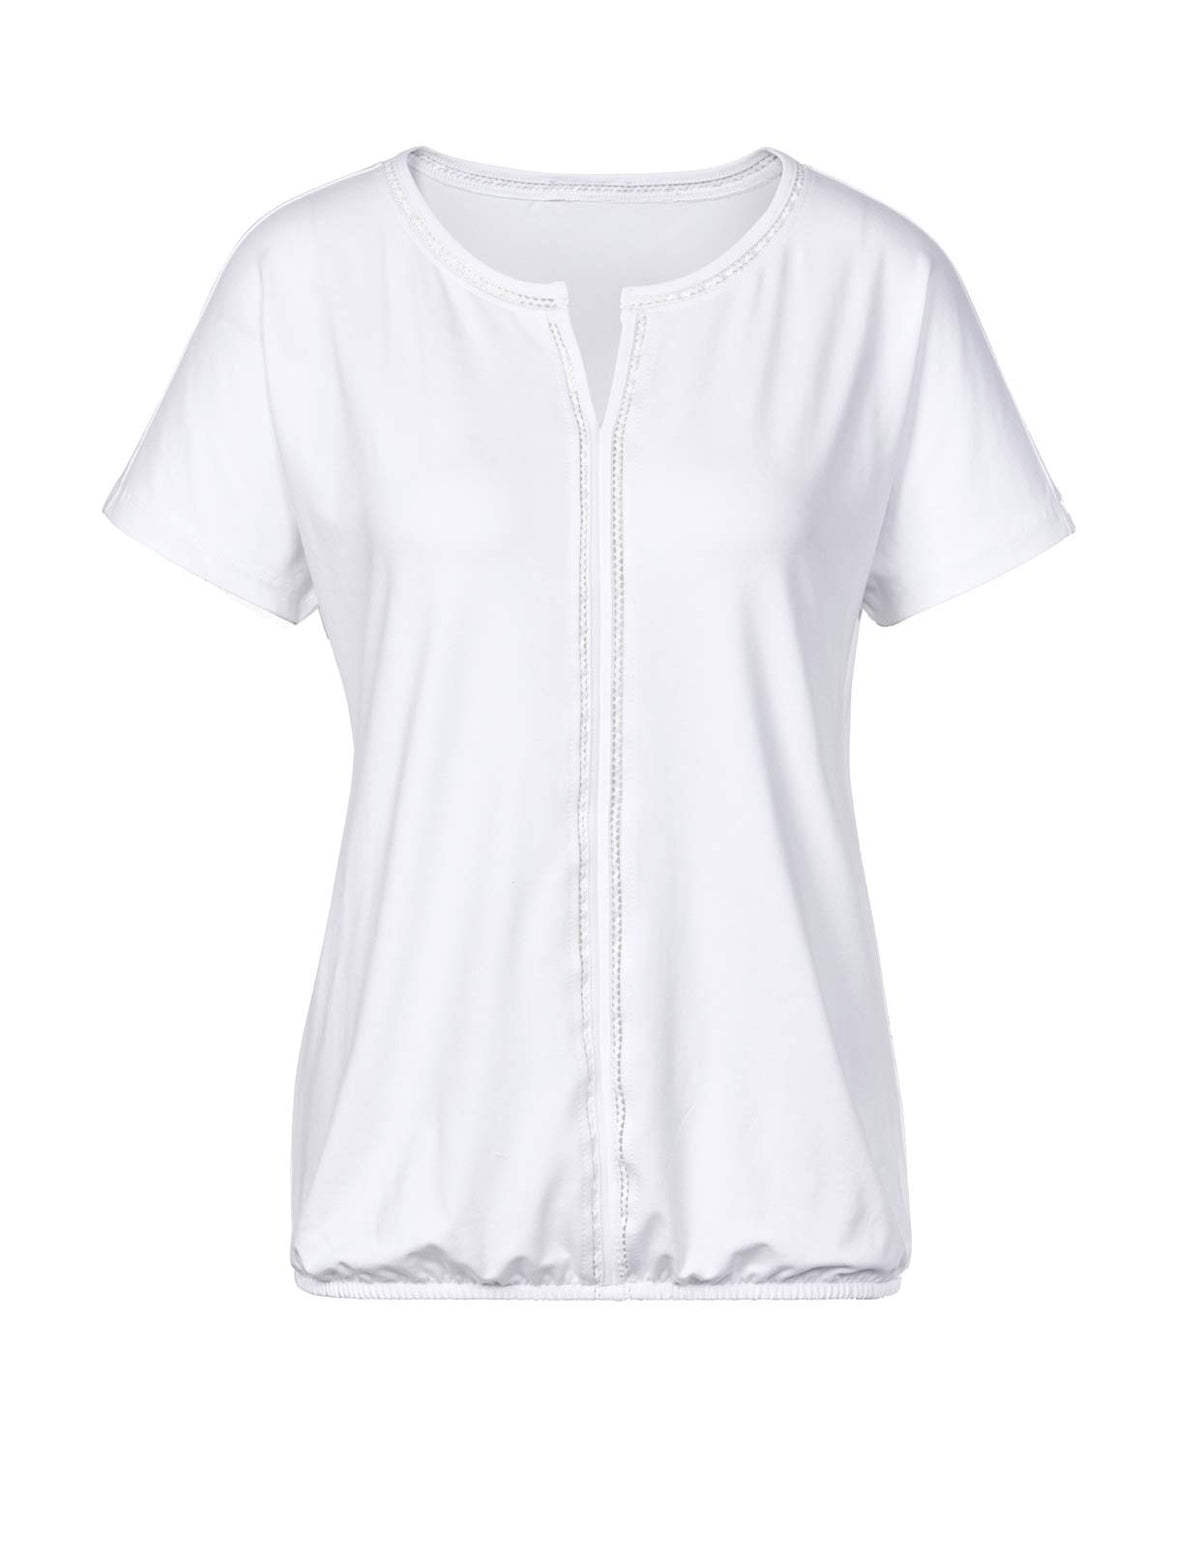 CRéATION L PREMIUM Damen Jerseyshirt mit Spitze, weiß